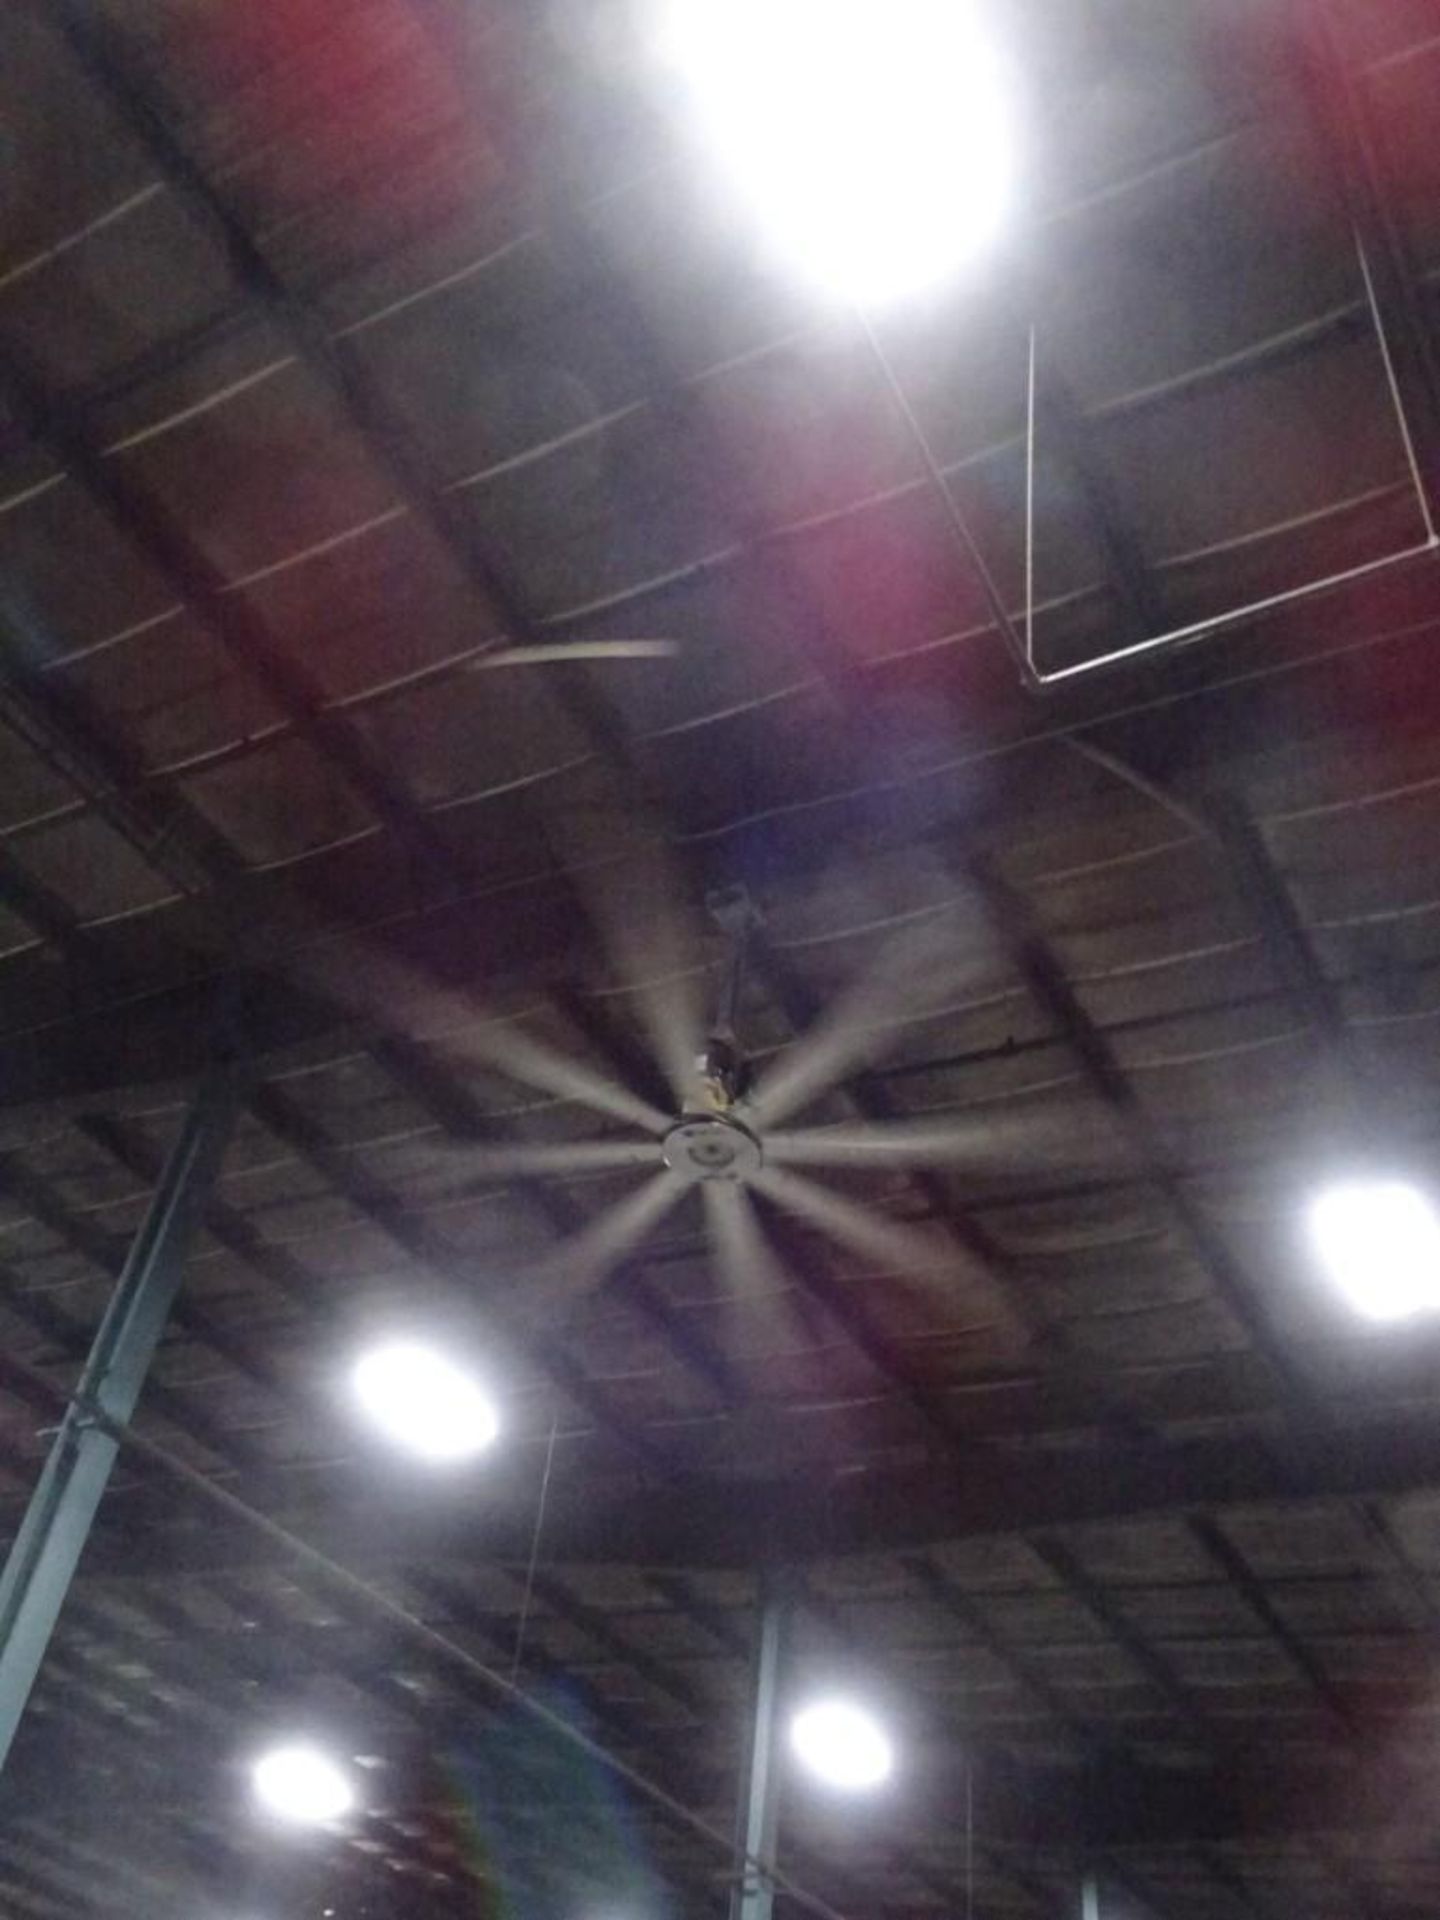 Big Ass Fan Industrial Ceiling Fan, 10' Blades - Image 2 of 3